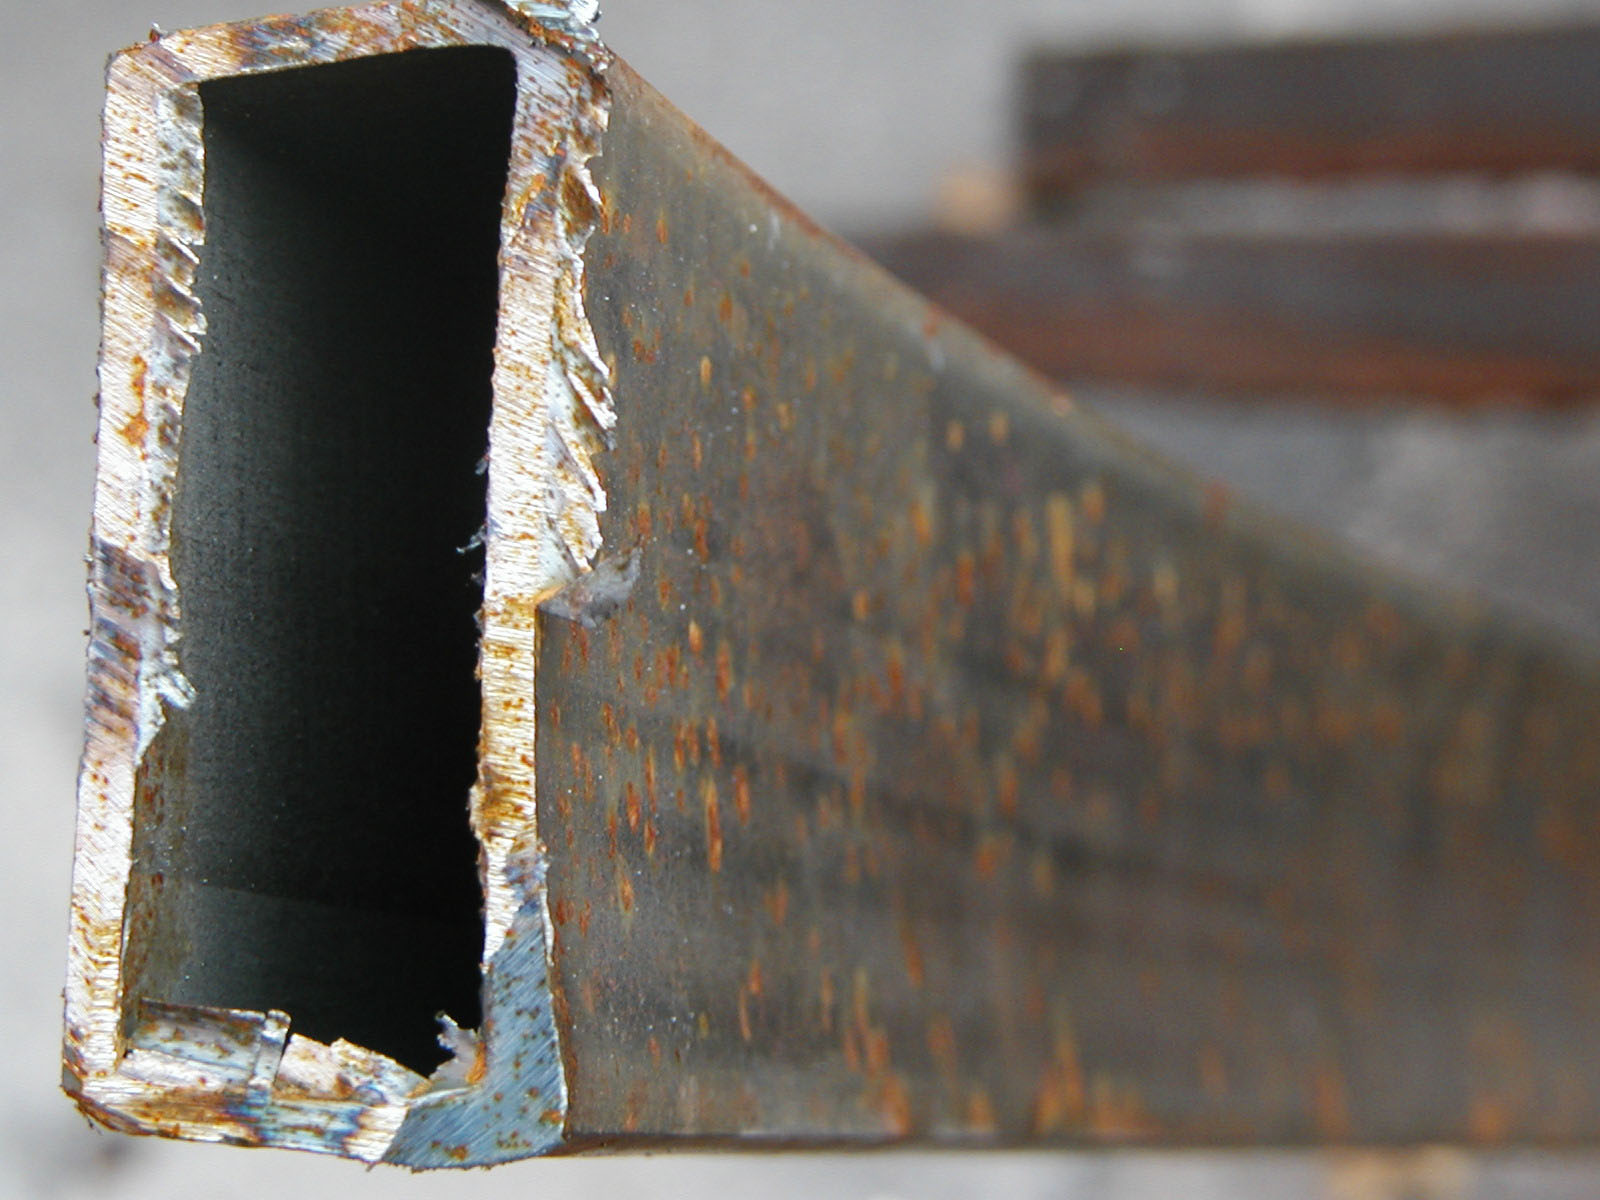 Rusted metal bar closeup photo